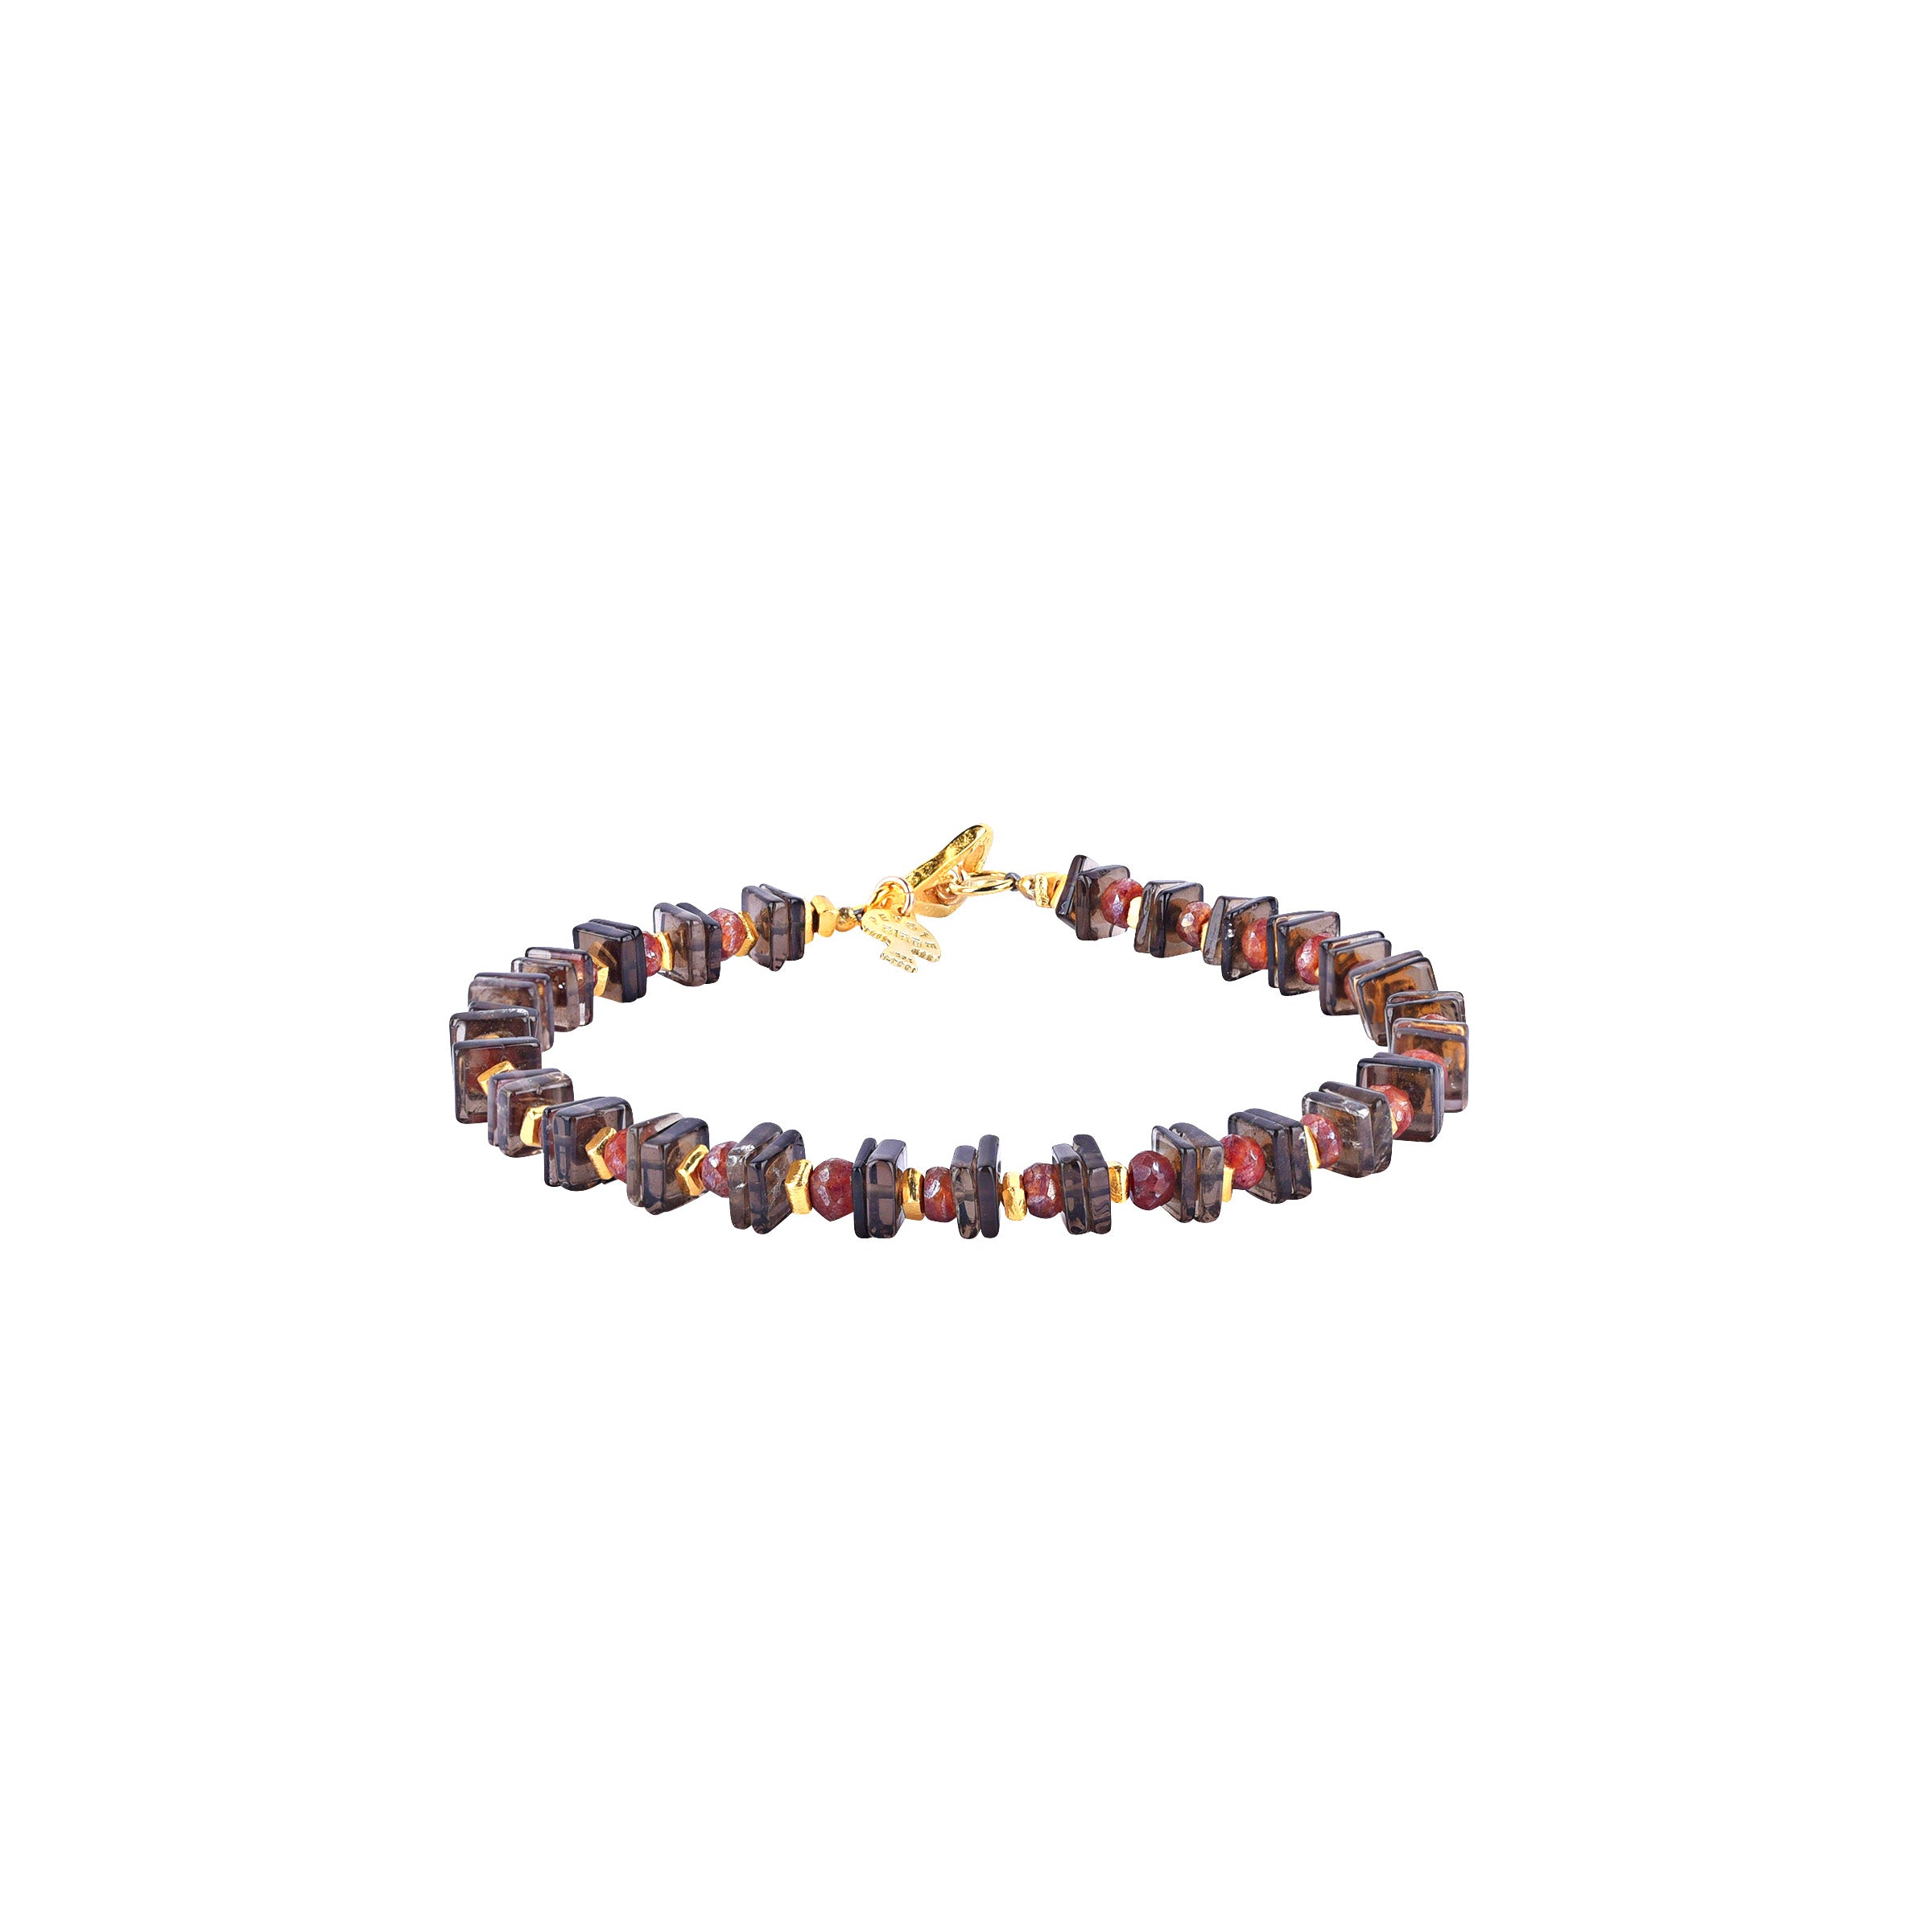 Copperhead Bracelet